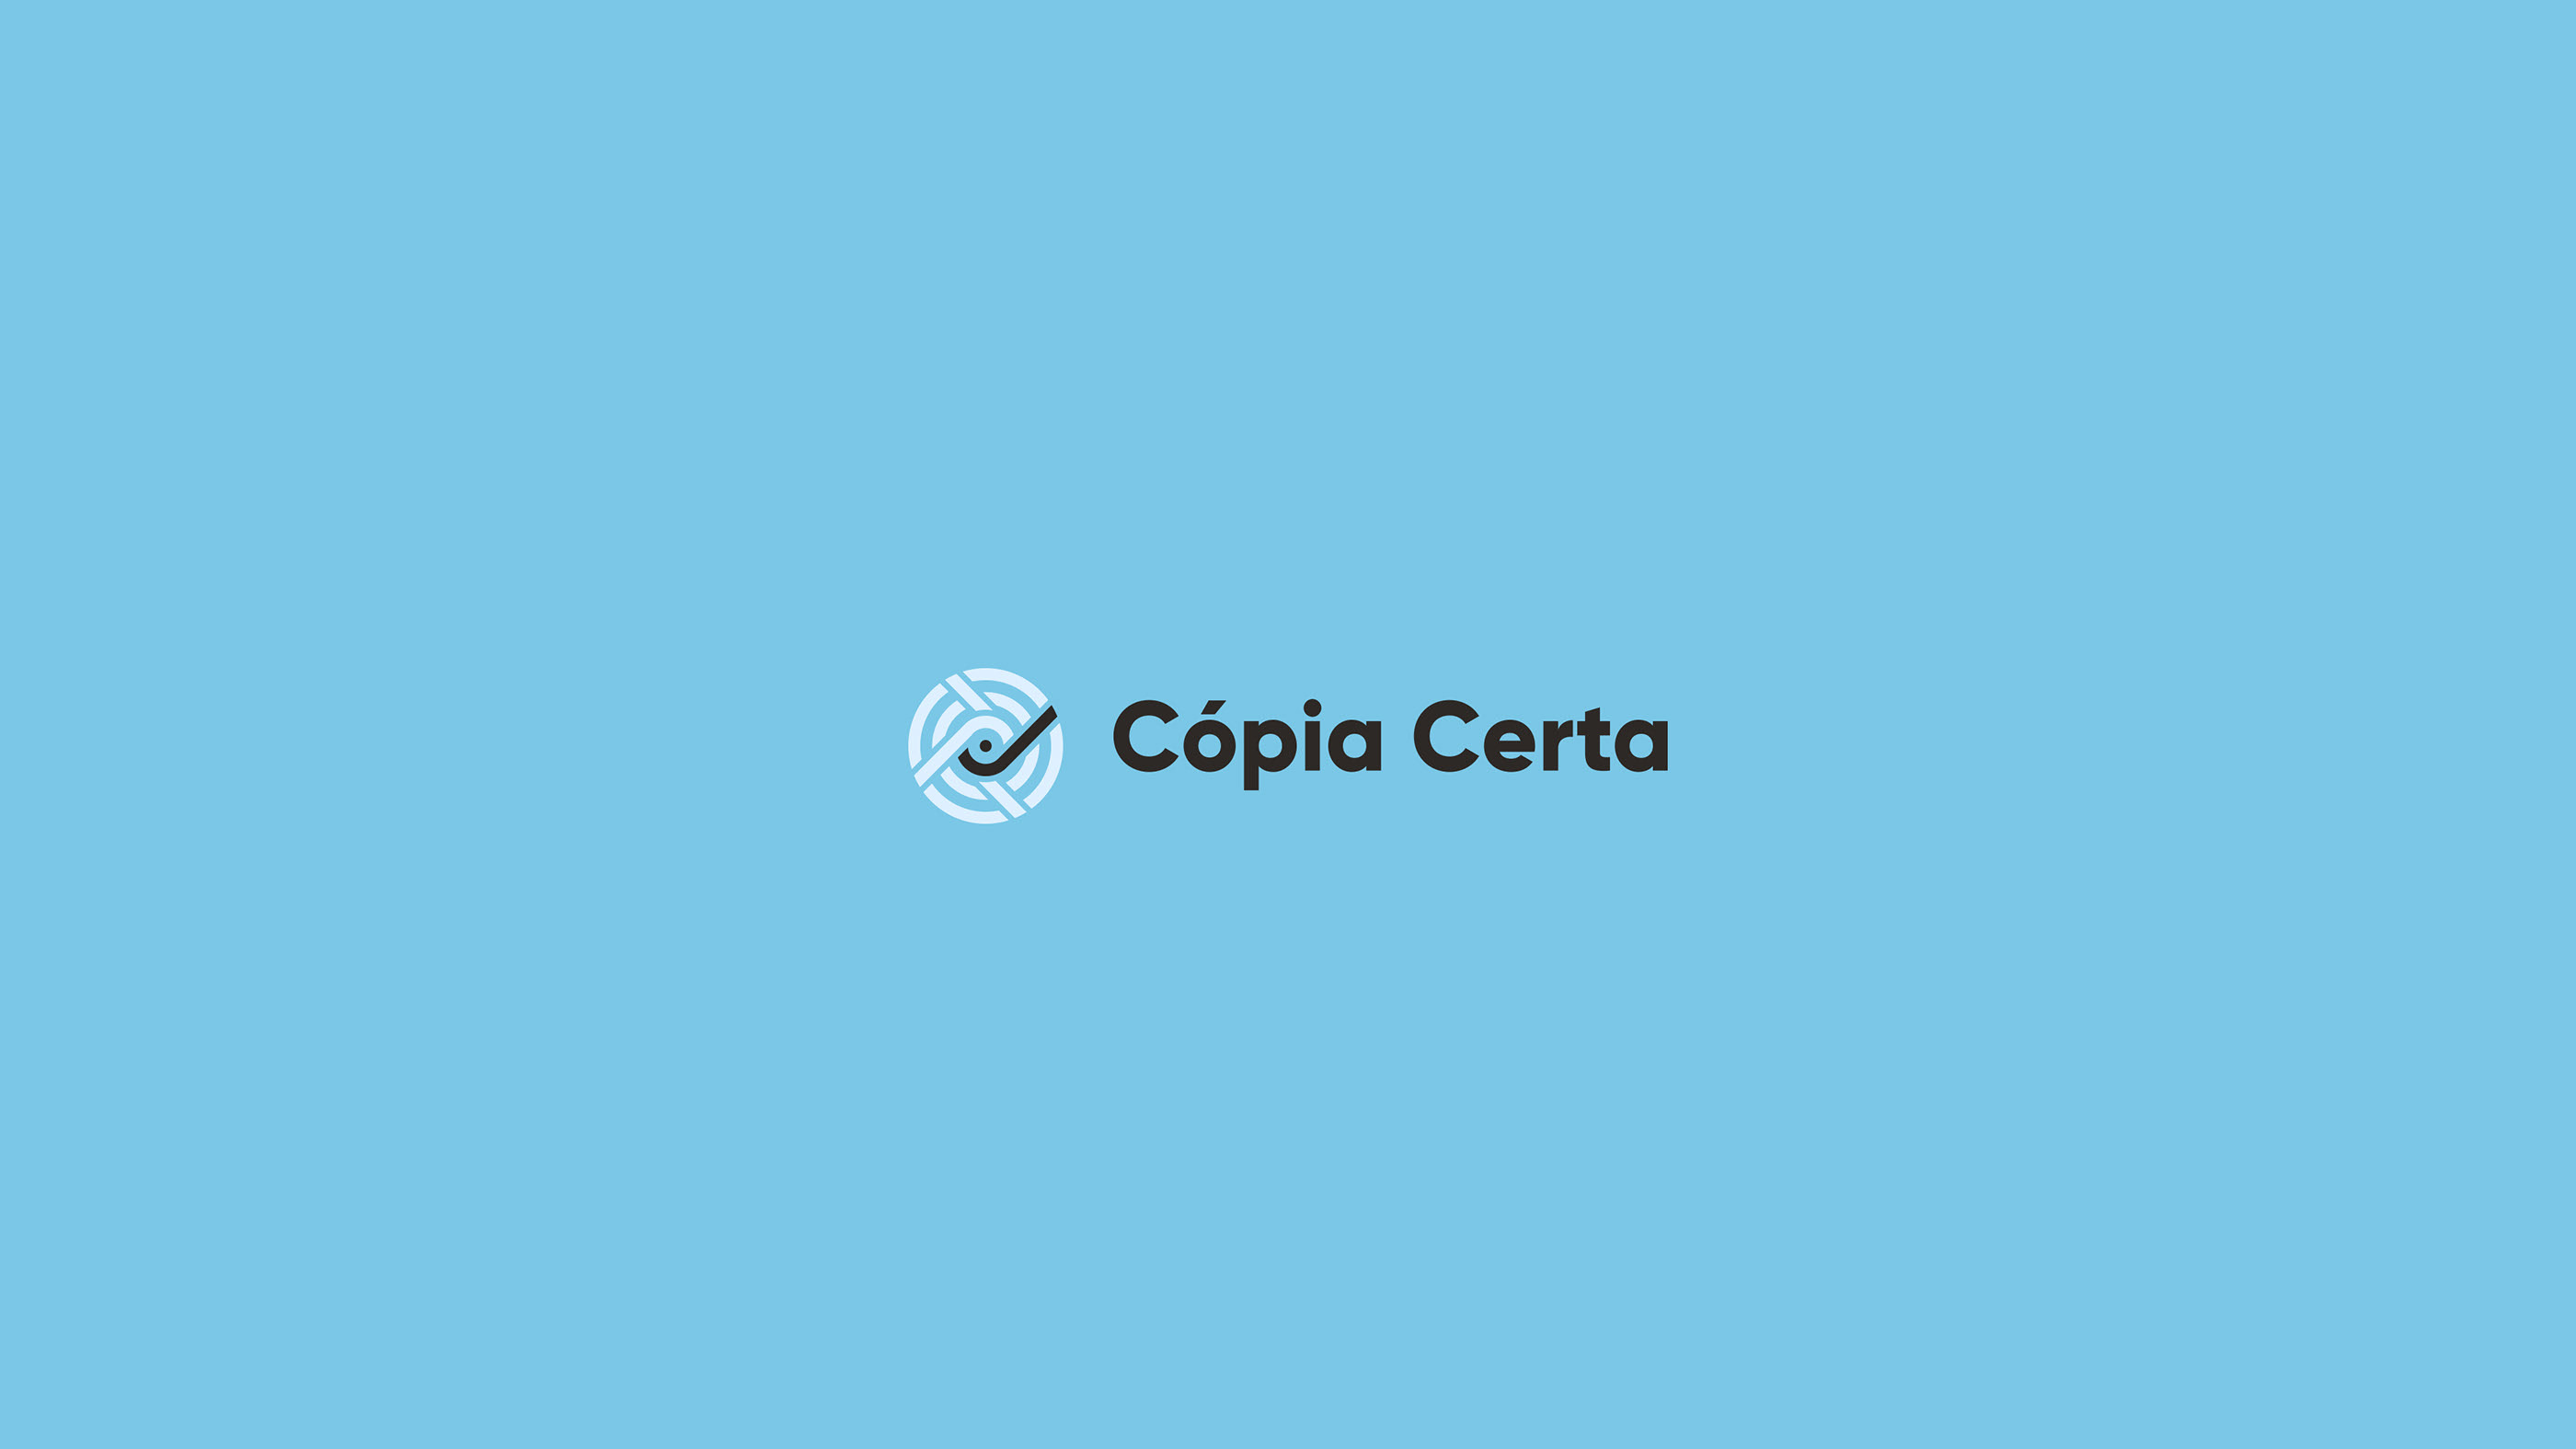 巴西,Copia,Certa,图形,服务商,设计 . 巴西Copia Certa图形服务商VI设计 